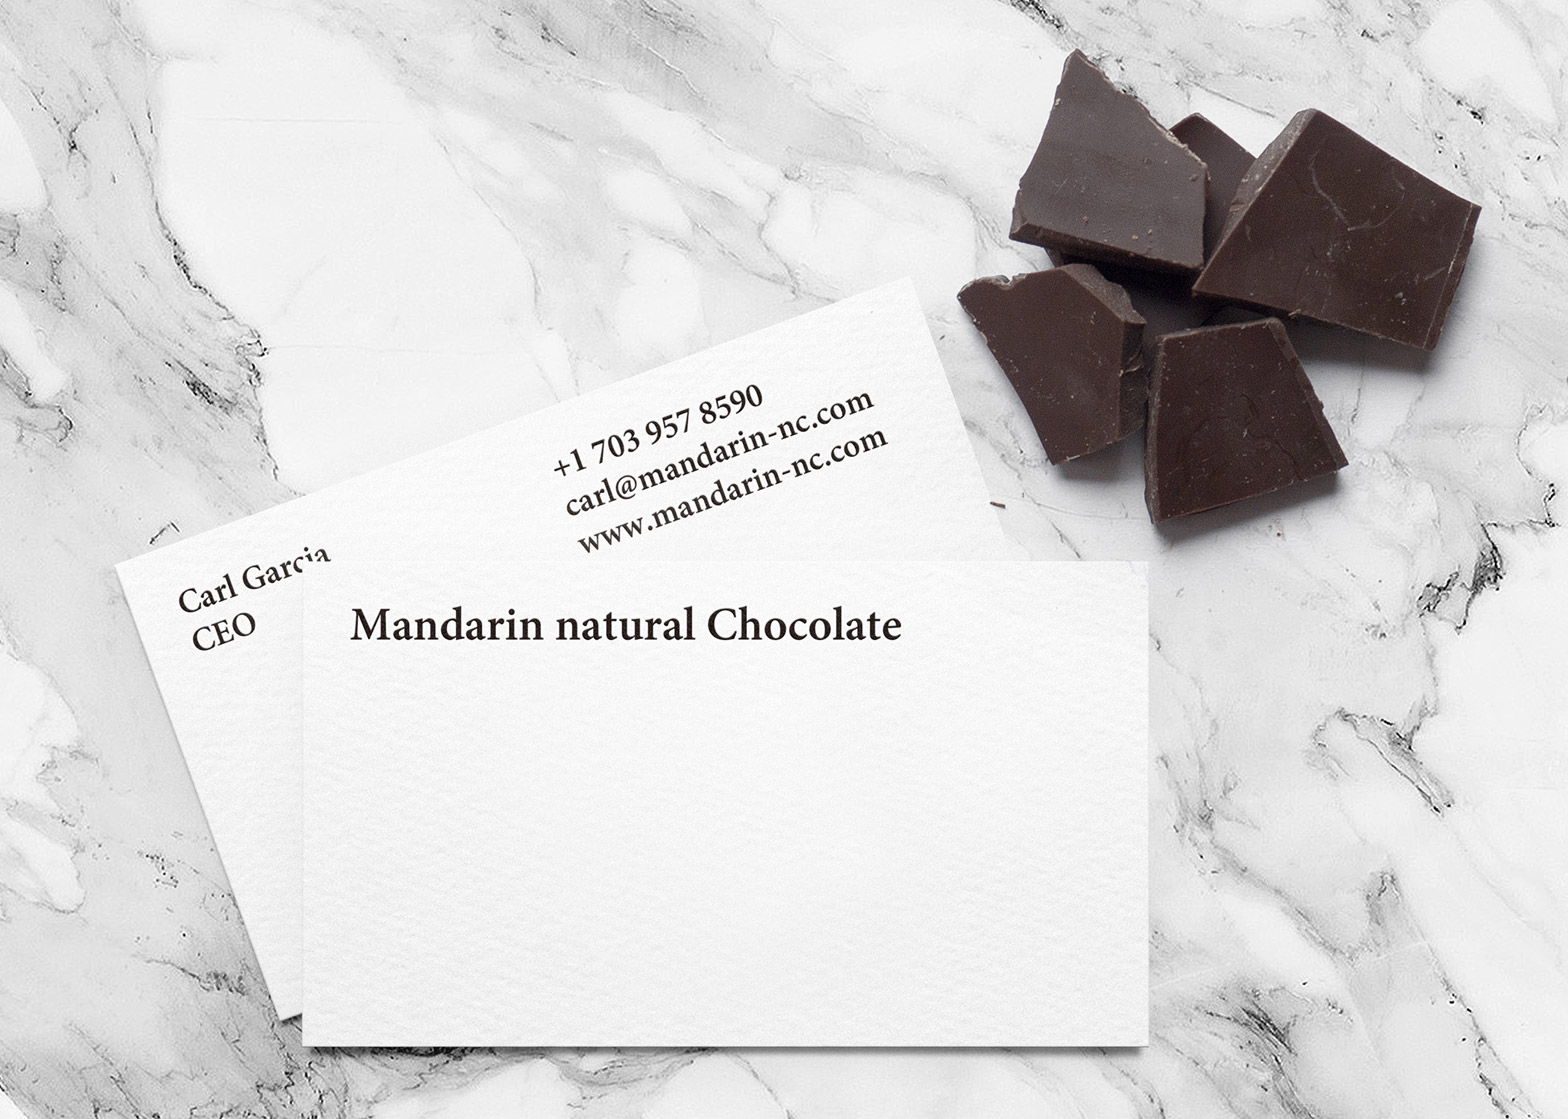 mandarin-natural-chocolate-yuta-takahashi-branding-packaging-design_dezeen_1568_6